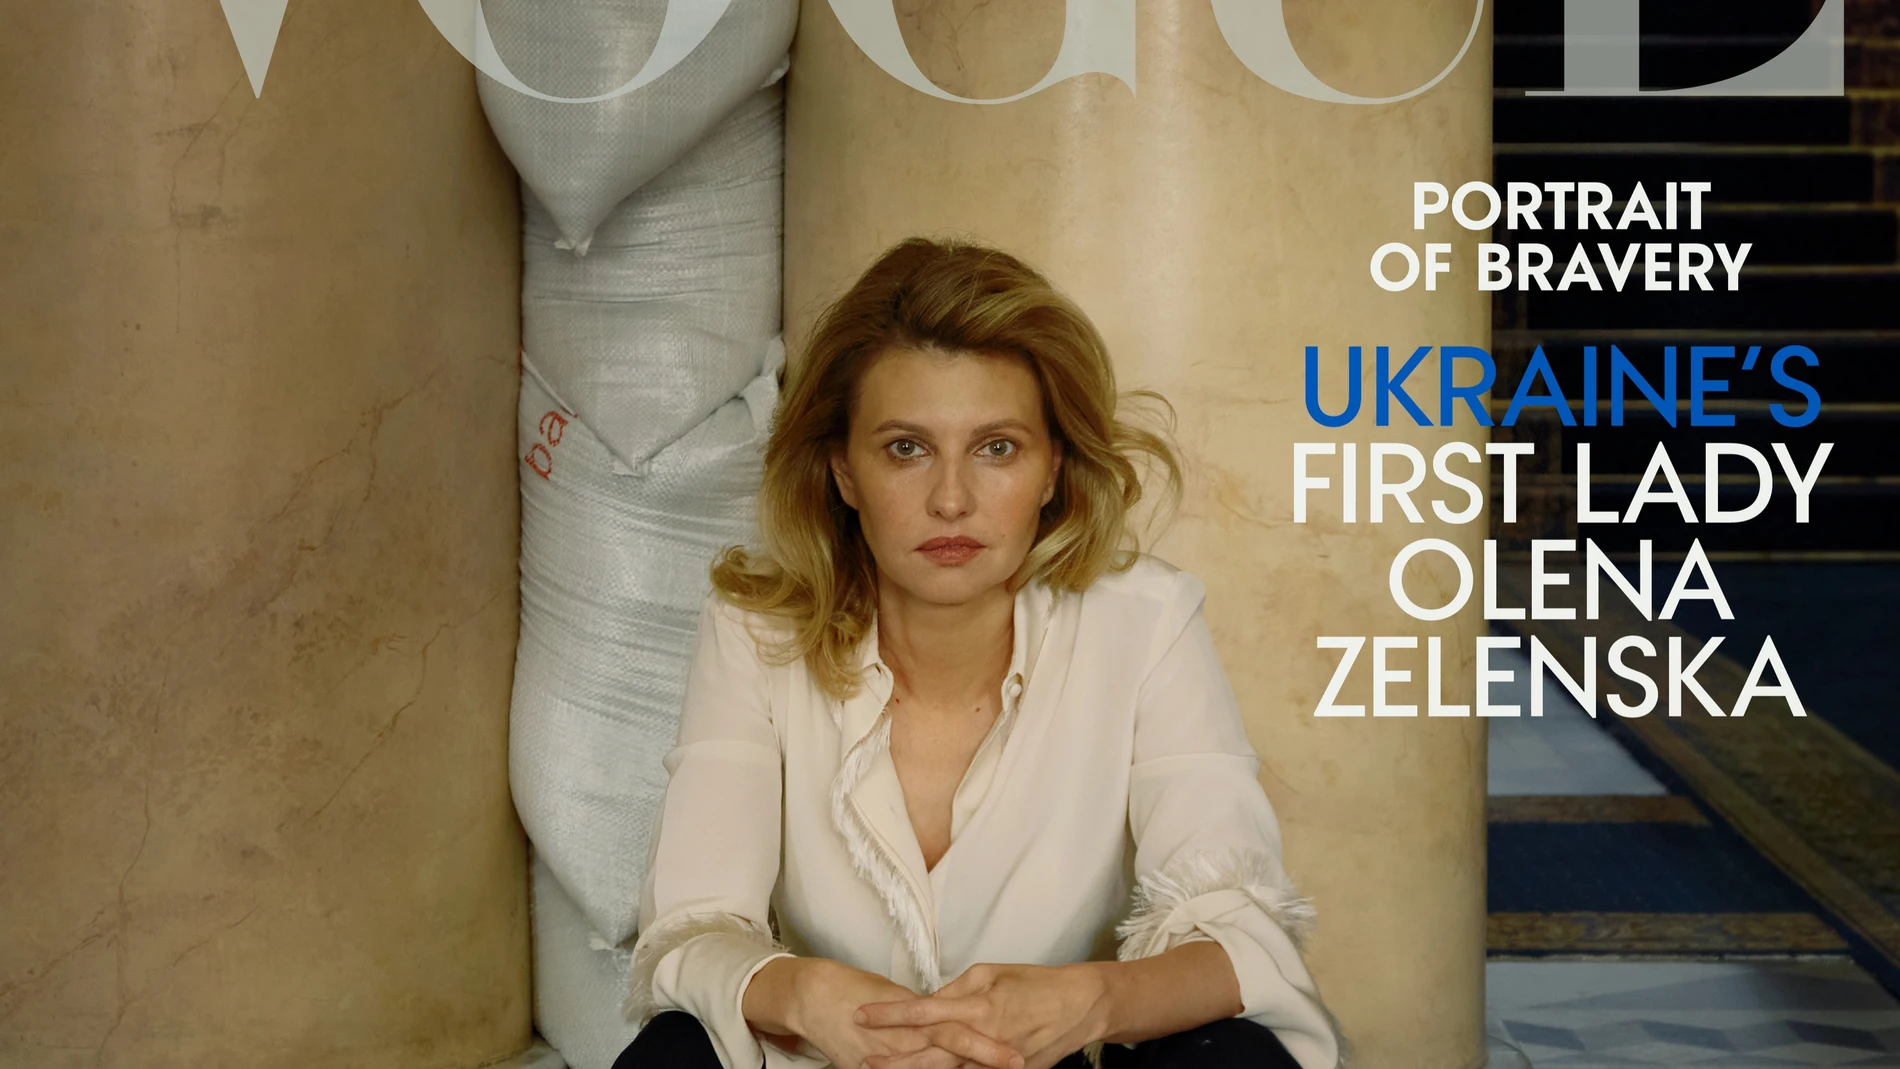 Portada de la revista Vogue donde aparece Olena Zelenska